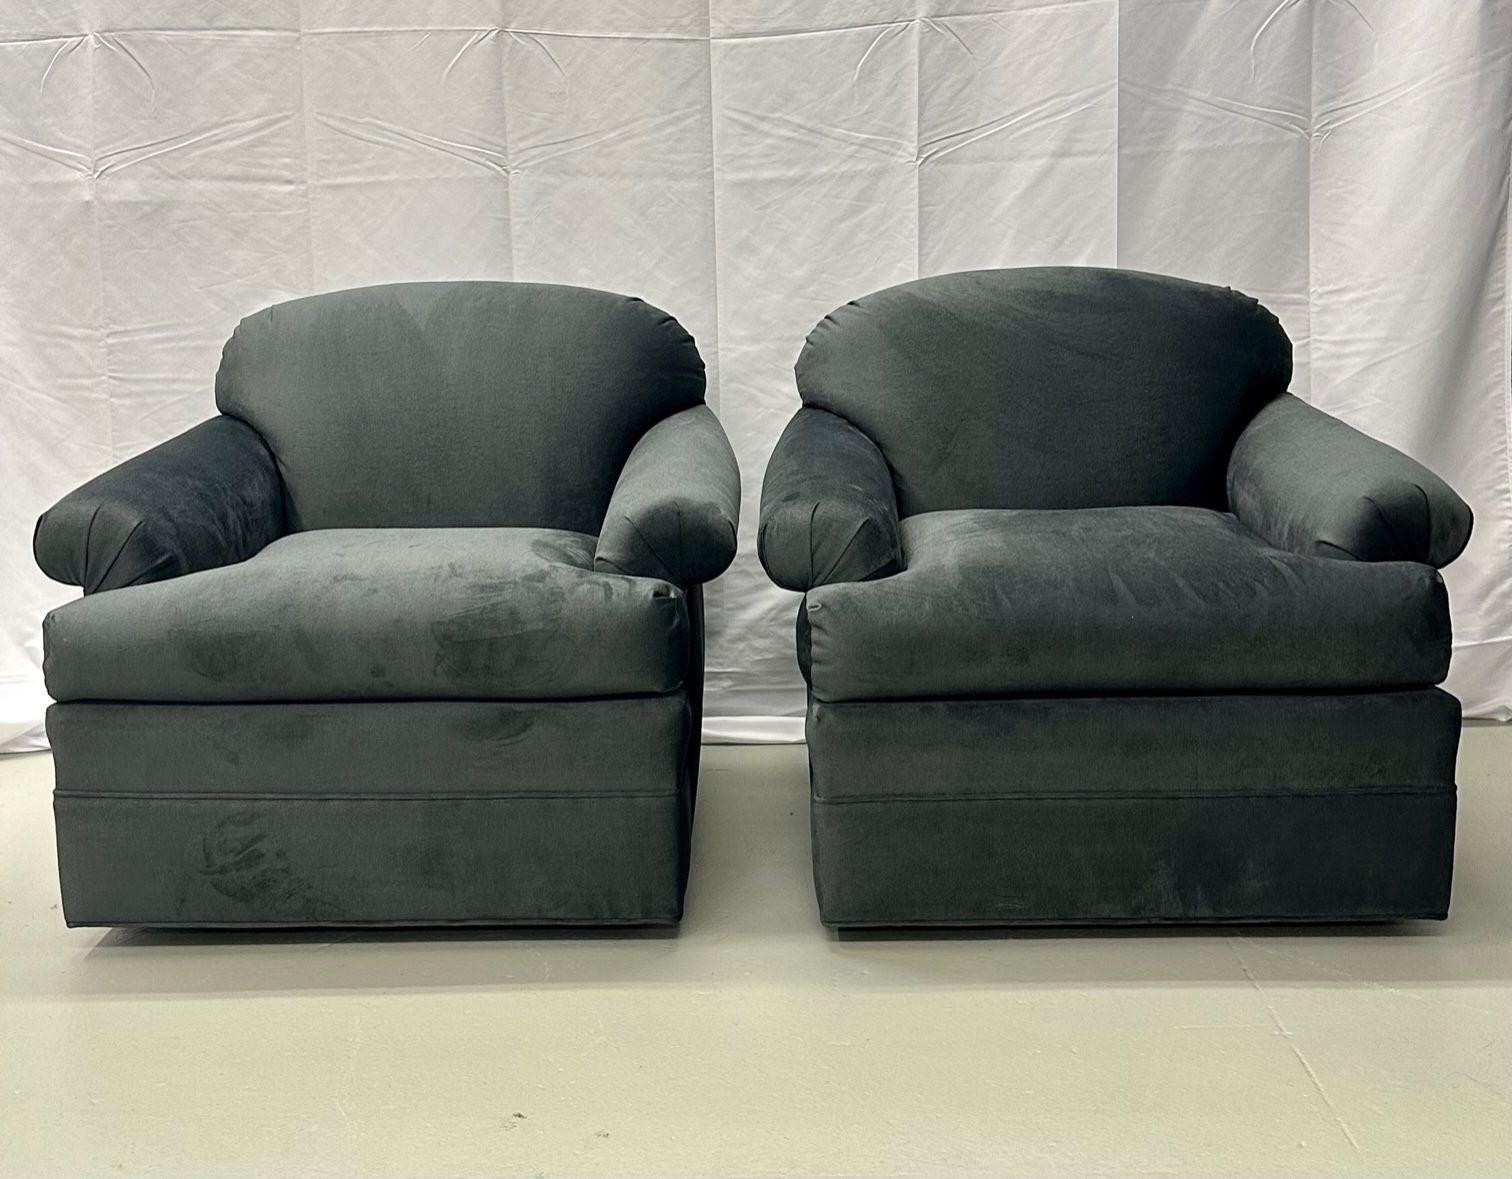 Paire de chaises de salon / pivotantes grises de style moderne du milieu du siècle dernier, accoudoir à volutes
Paire de grands fauteuils pivotants nouvellement tapissés ayant des accoudoirs roulés. Chacun d'entre eux est doté d'une grande base